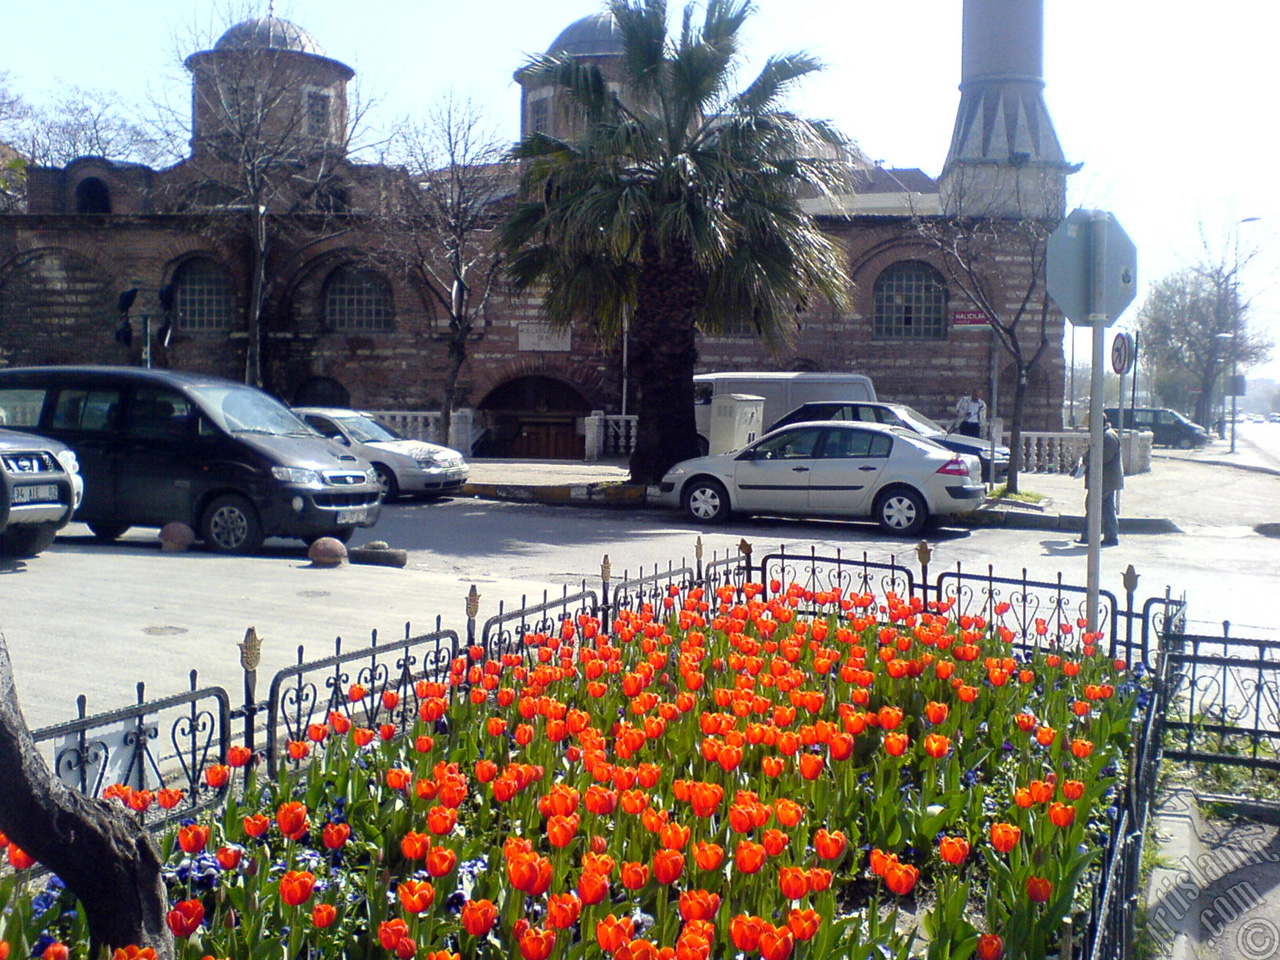 Turkish-Ottoman Tulips.
